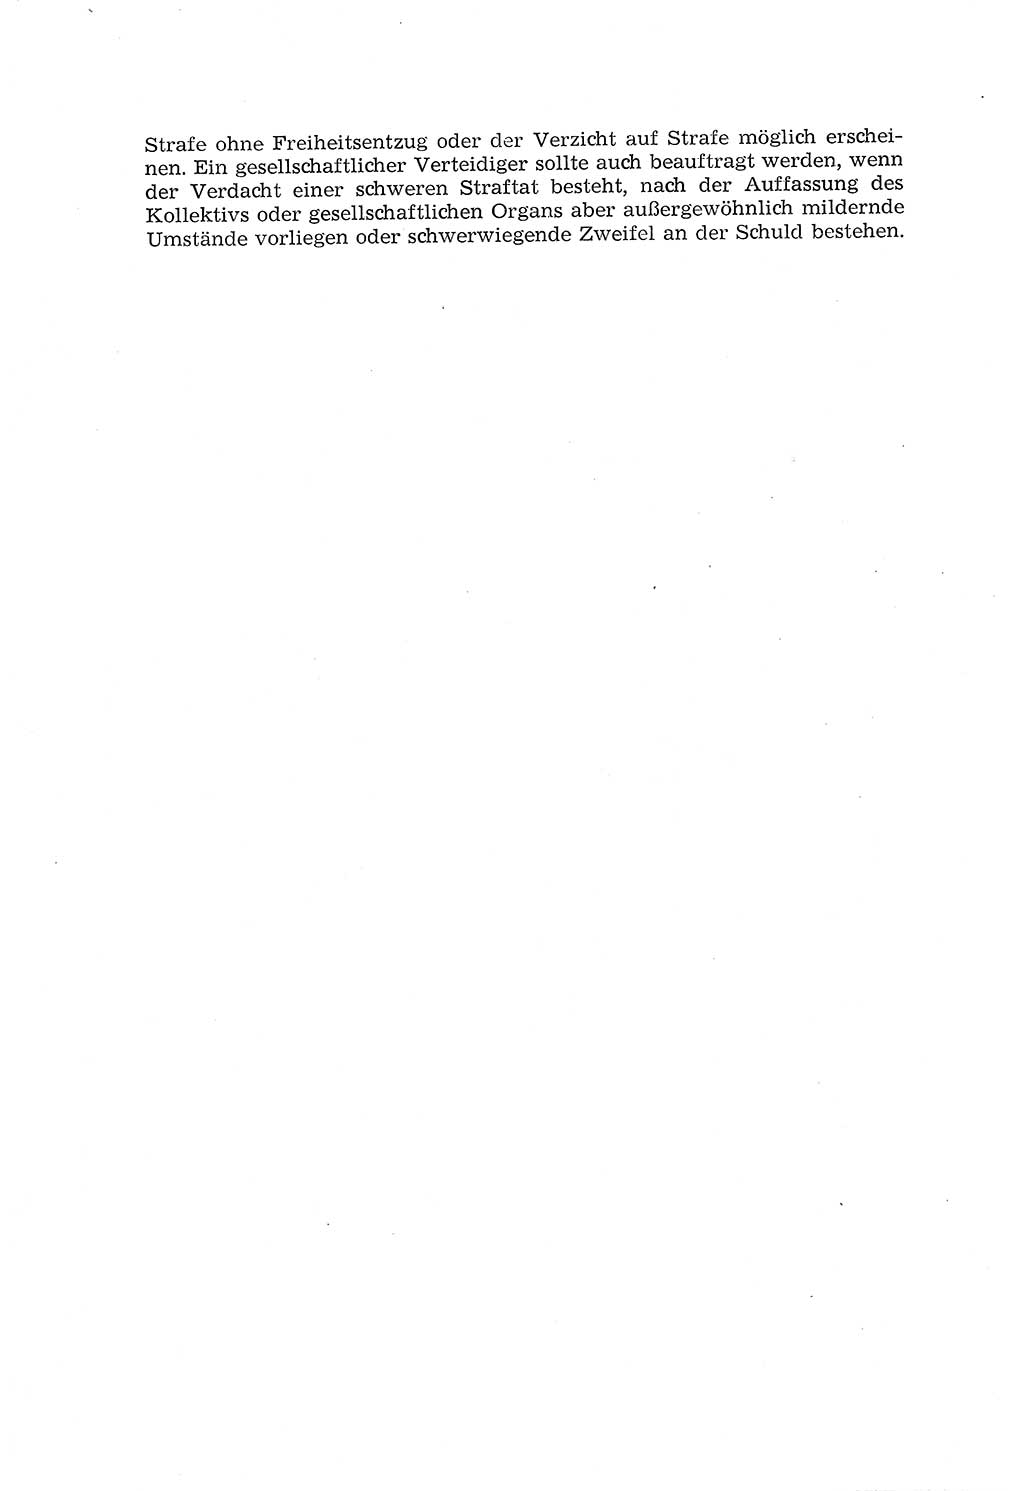 Die Mitwirkung der Werktätigen am Strafverfahren [Deutsche Demokratische Republik (DDR)] 1966, Seite 154 (Mitw. Str.-Verf. DDR 1966, S. 154)